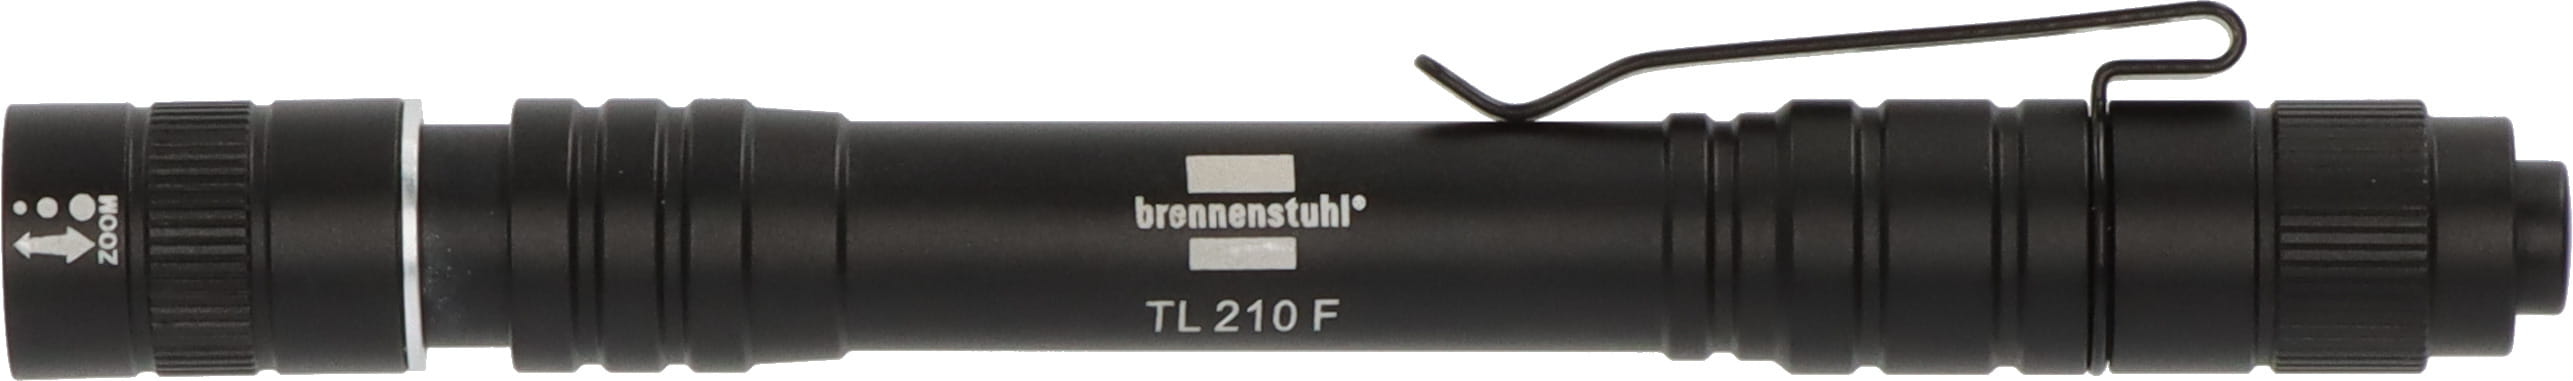 Brennenstuhl 1173750002, Taschenlampe, Schwarz, Aluminium, Tasten, IP44, LED